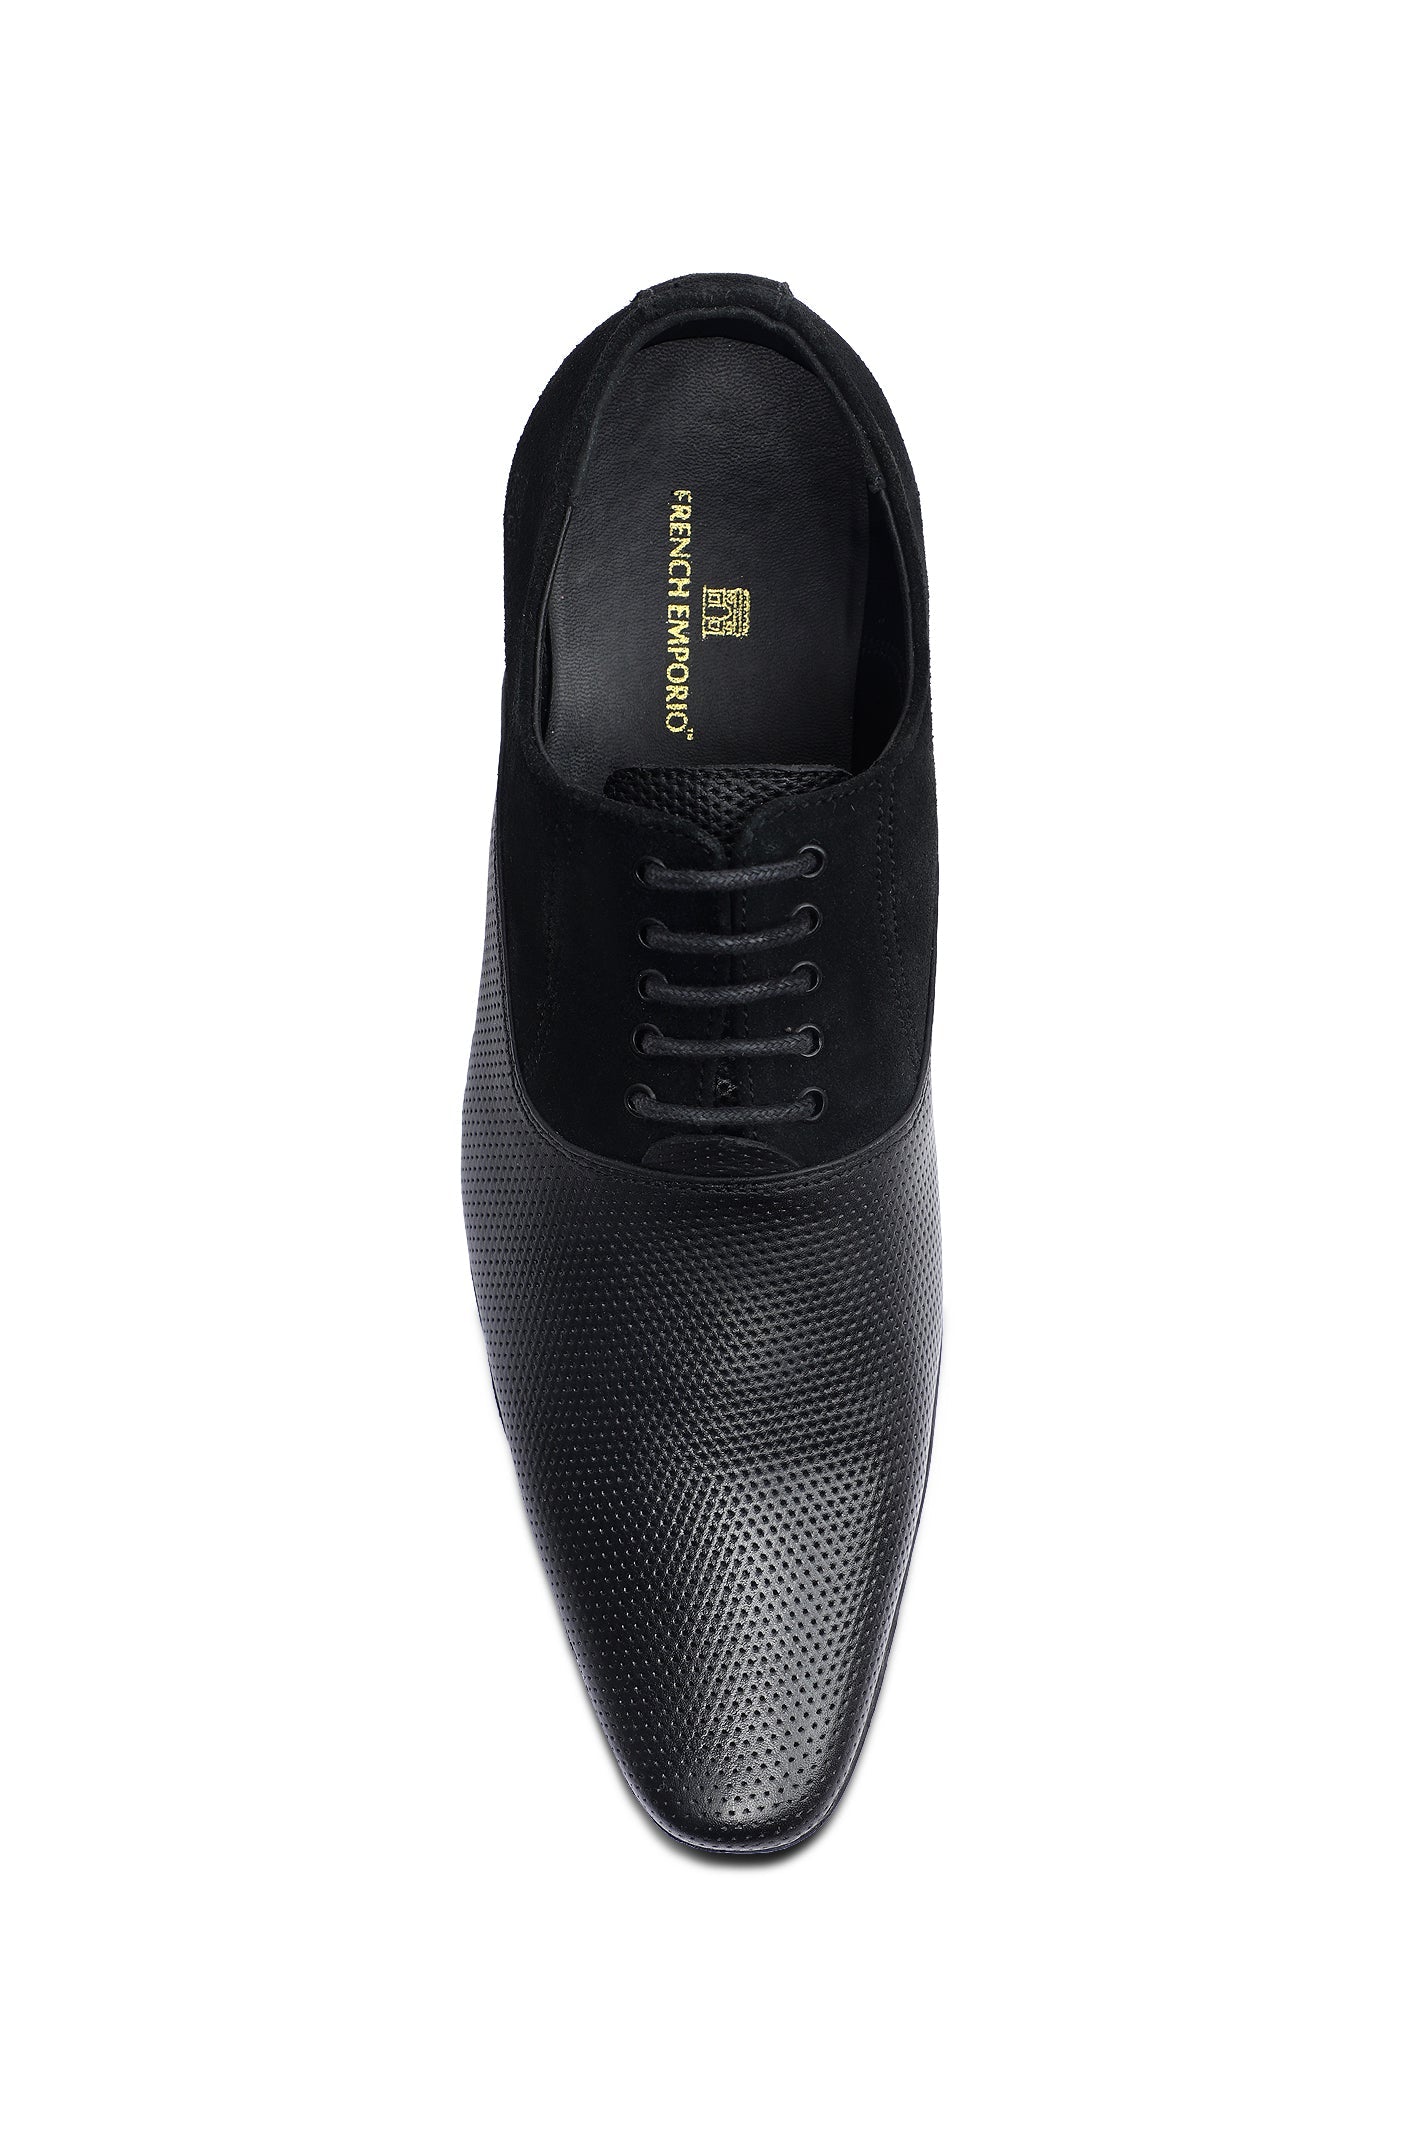 Formal Shoes For Men SKU: SMF-0249-BLACK - Diners